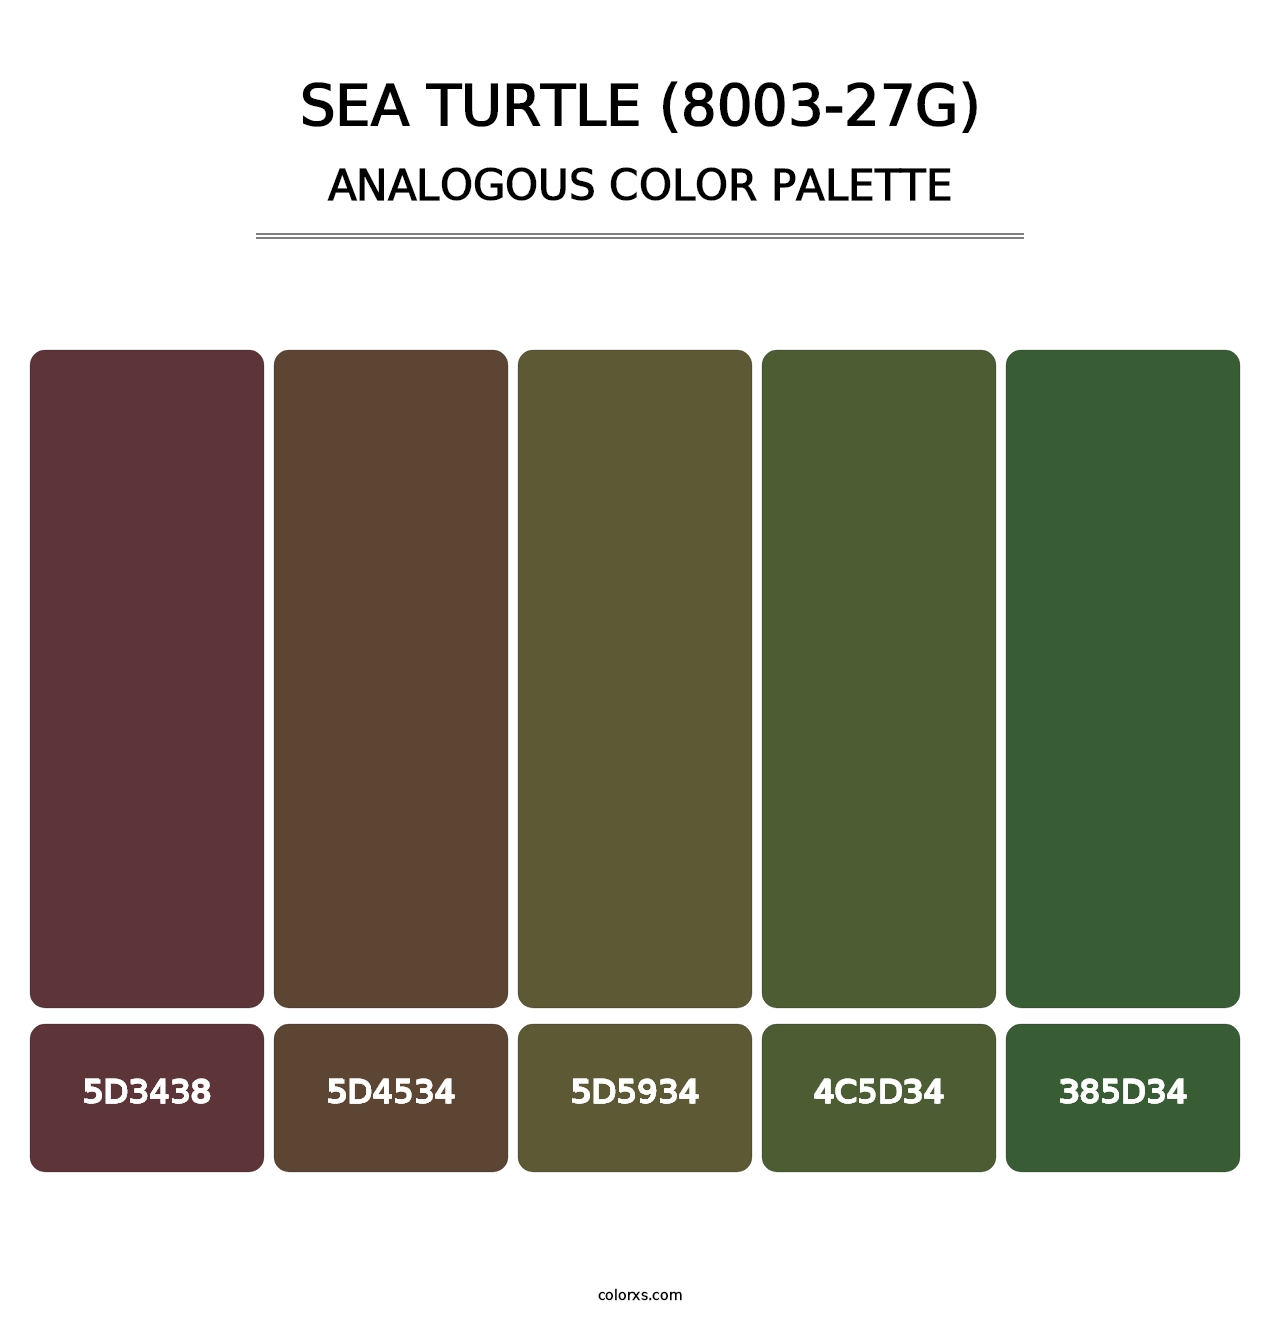 Sea Turtle (8003-27G) - Analogous Color Palette